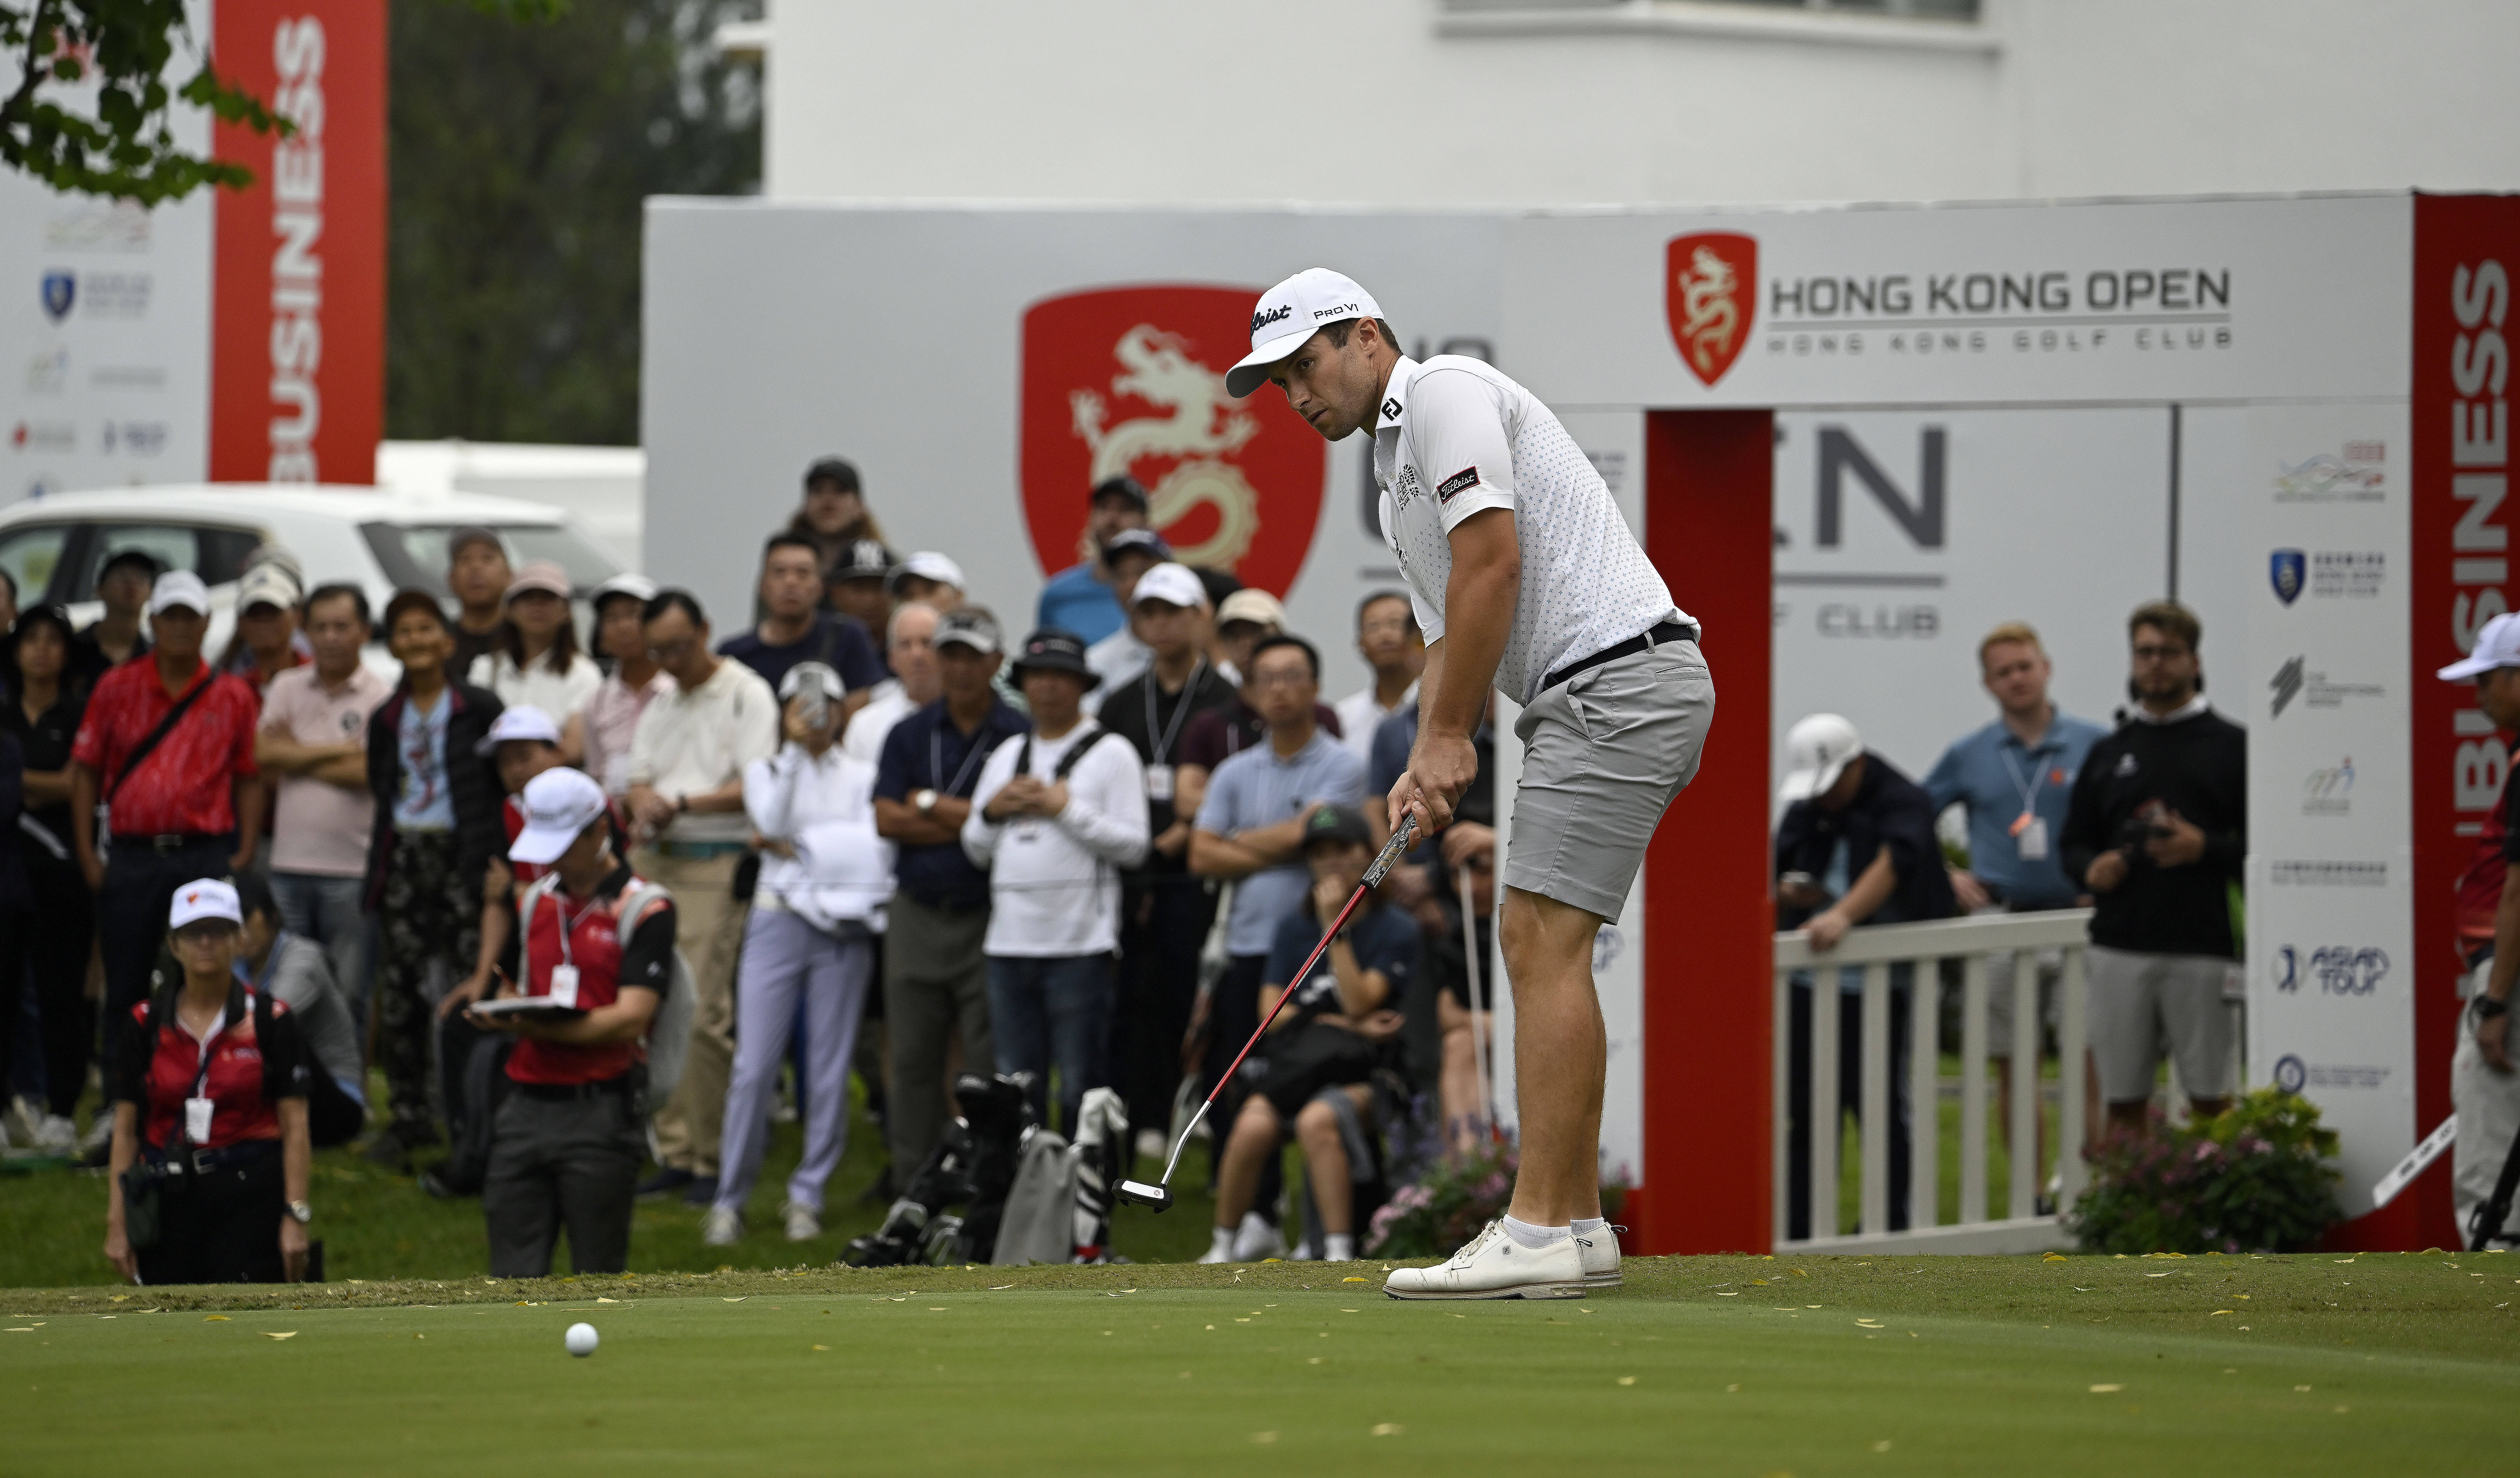 香港高尔夫球公开赛移动日 澳洲球星史密夫与泰国球手孔瓦迈并列领先